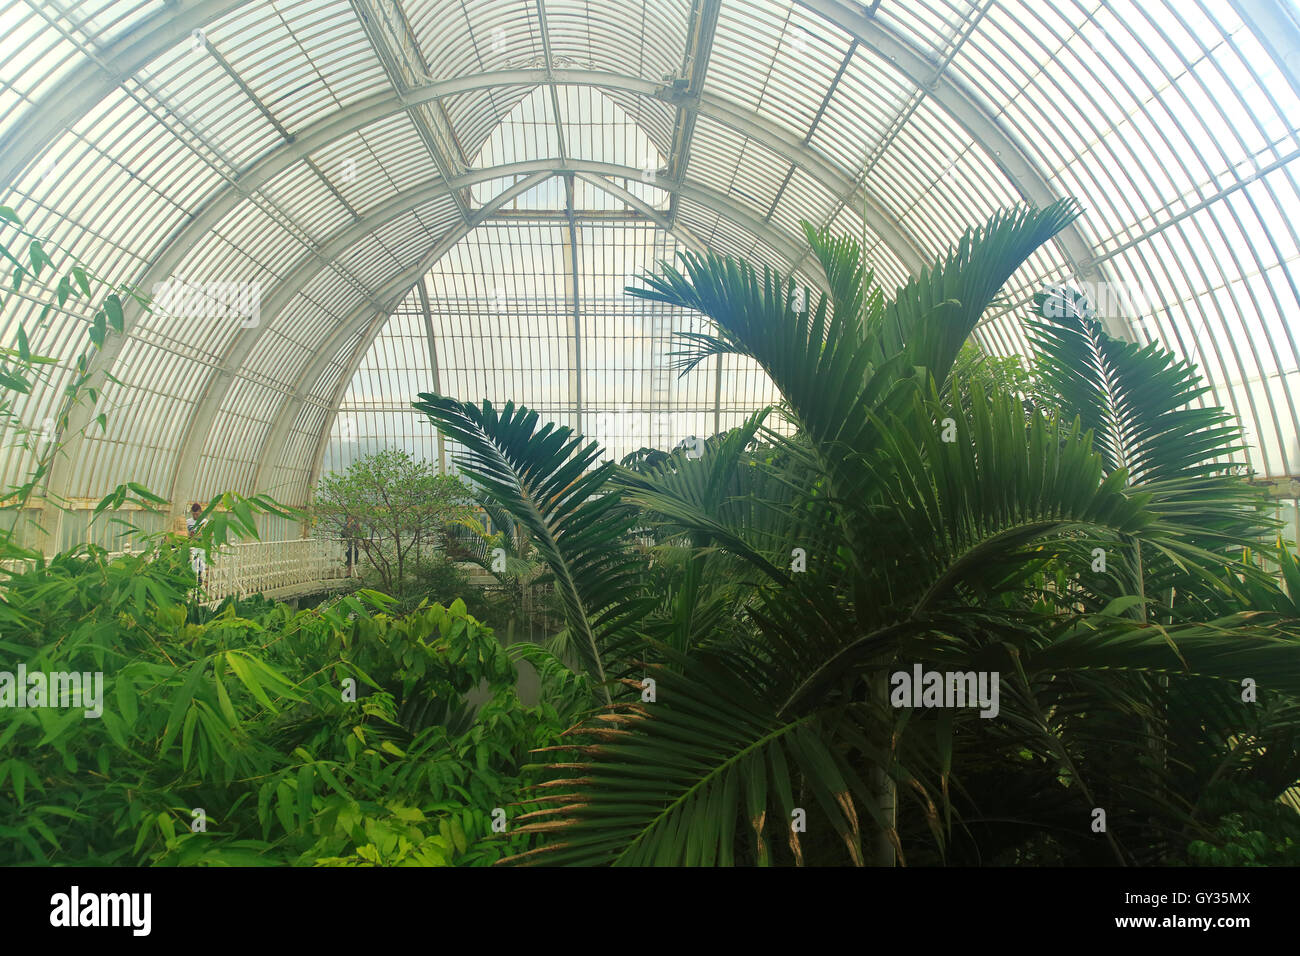 Hot steamy intérieur de la Palm House at Royal Botanic Gardens, Kew, Londres, Angleterre, Royaume-Uni Banque D'Images